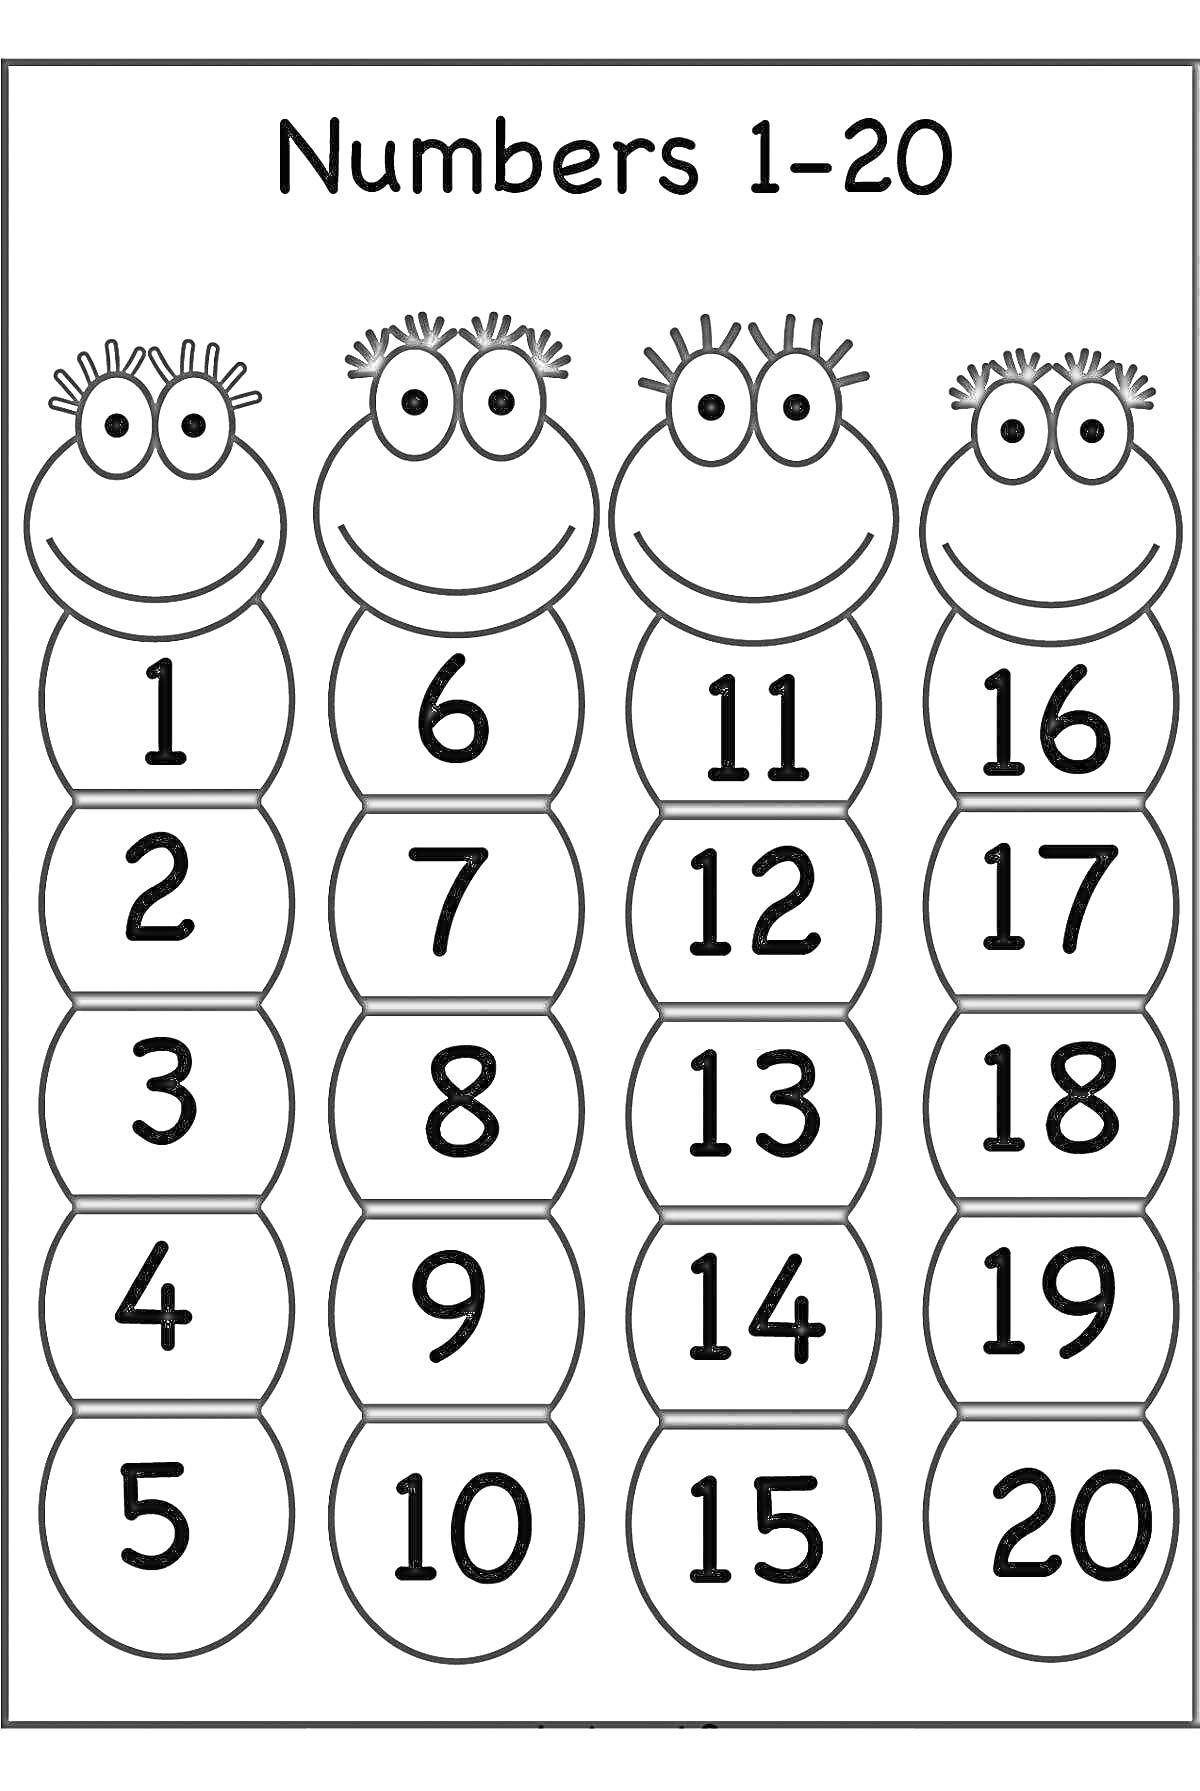 Раскраска Четыре ёжика с цифрами от 1 до 20 на их туловищах